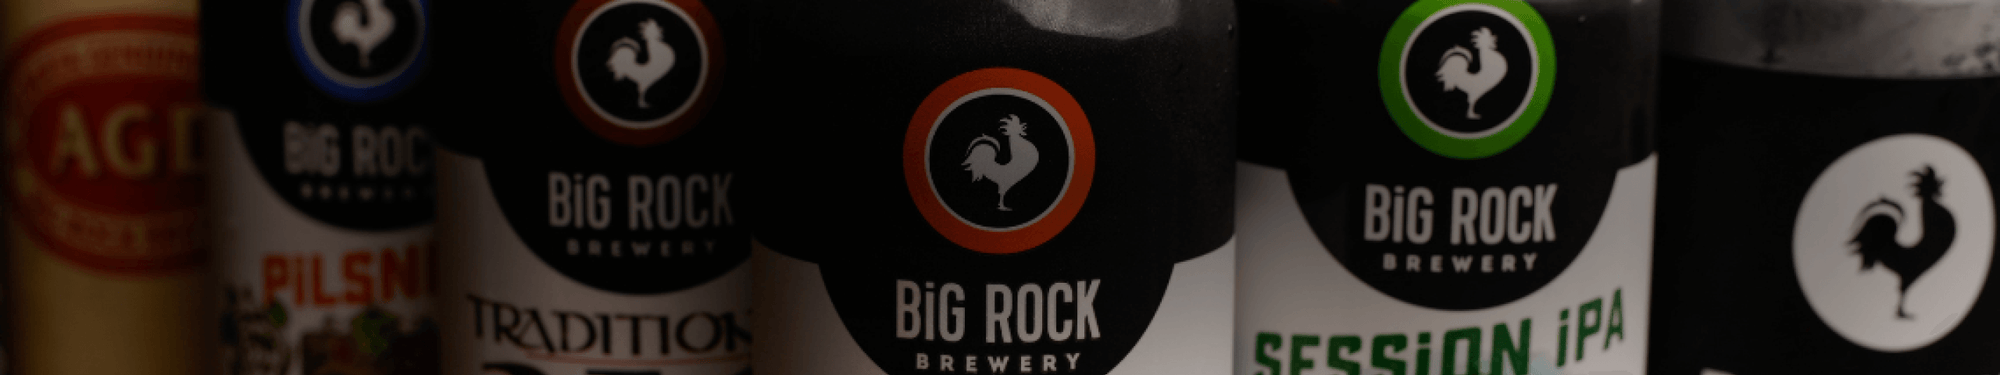 Big Rock Beer